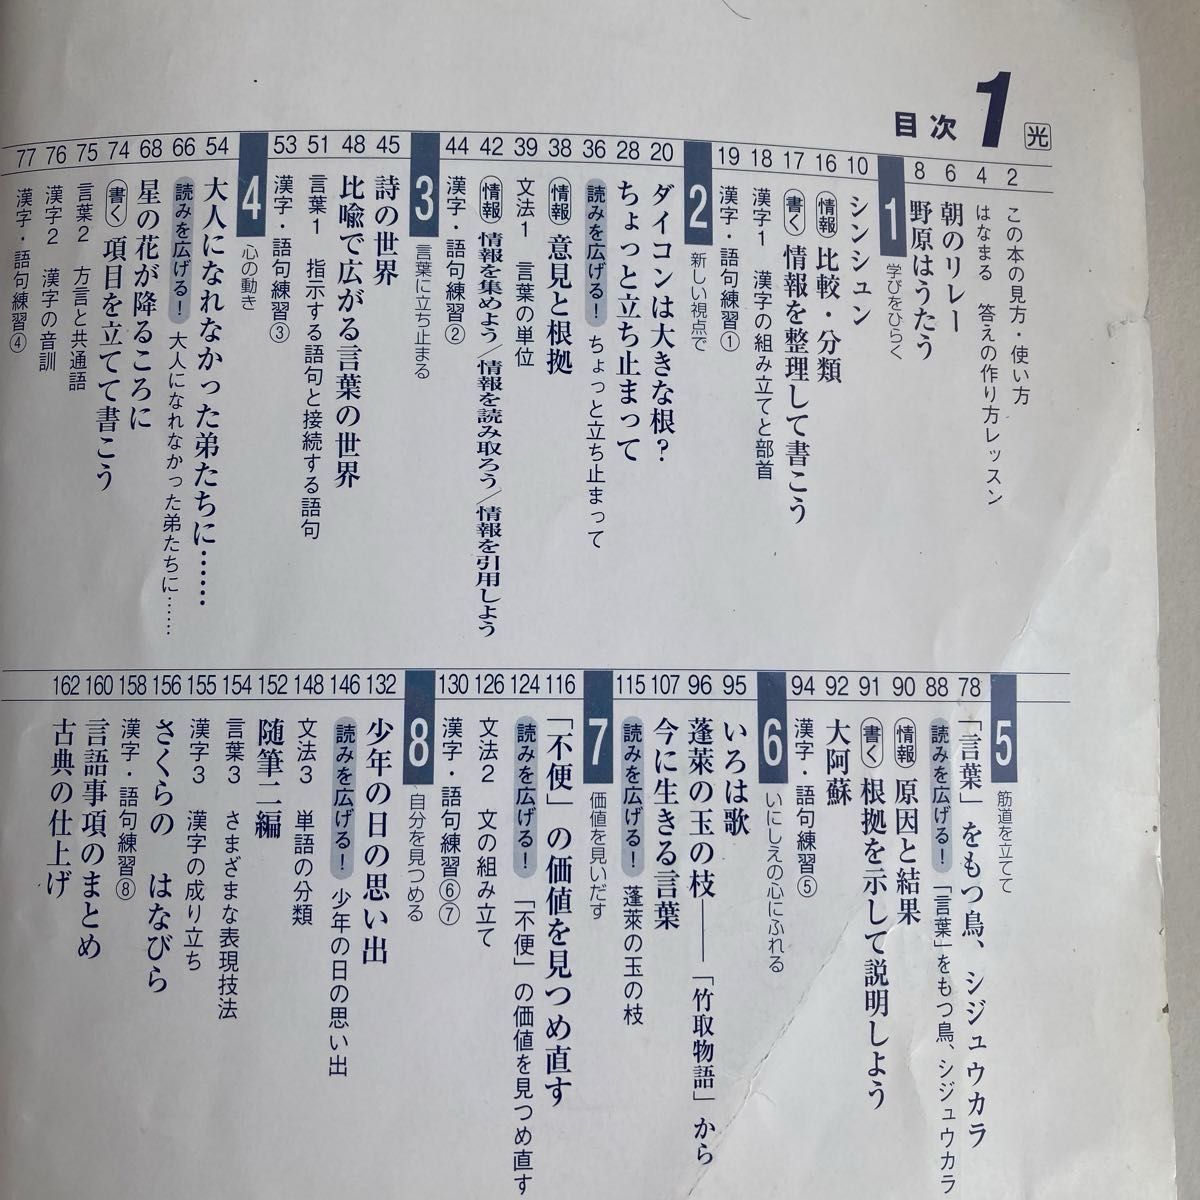 よくわかる国語の学習1 (本書と解説)漢字ノート 光村図書対応